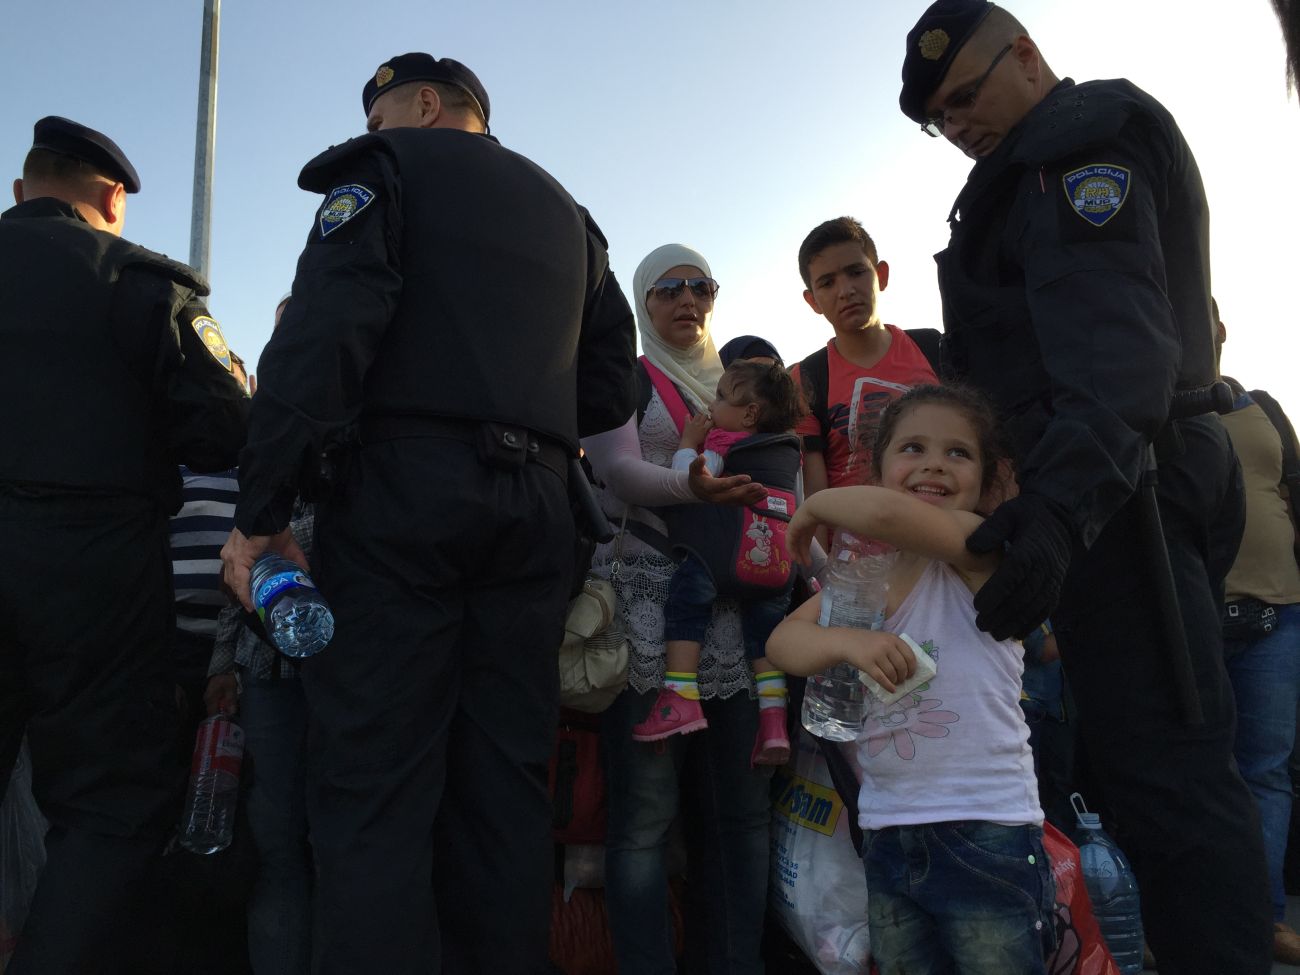 Menekült kislány szeptemberben Szerbia és Horvátország határán. Ők még átjöhettek